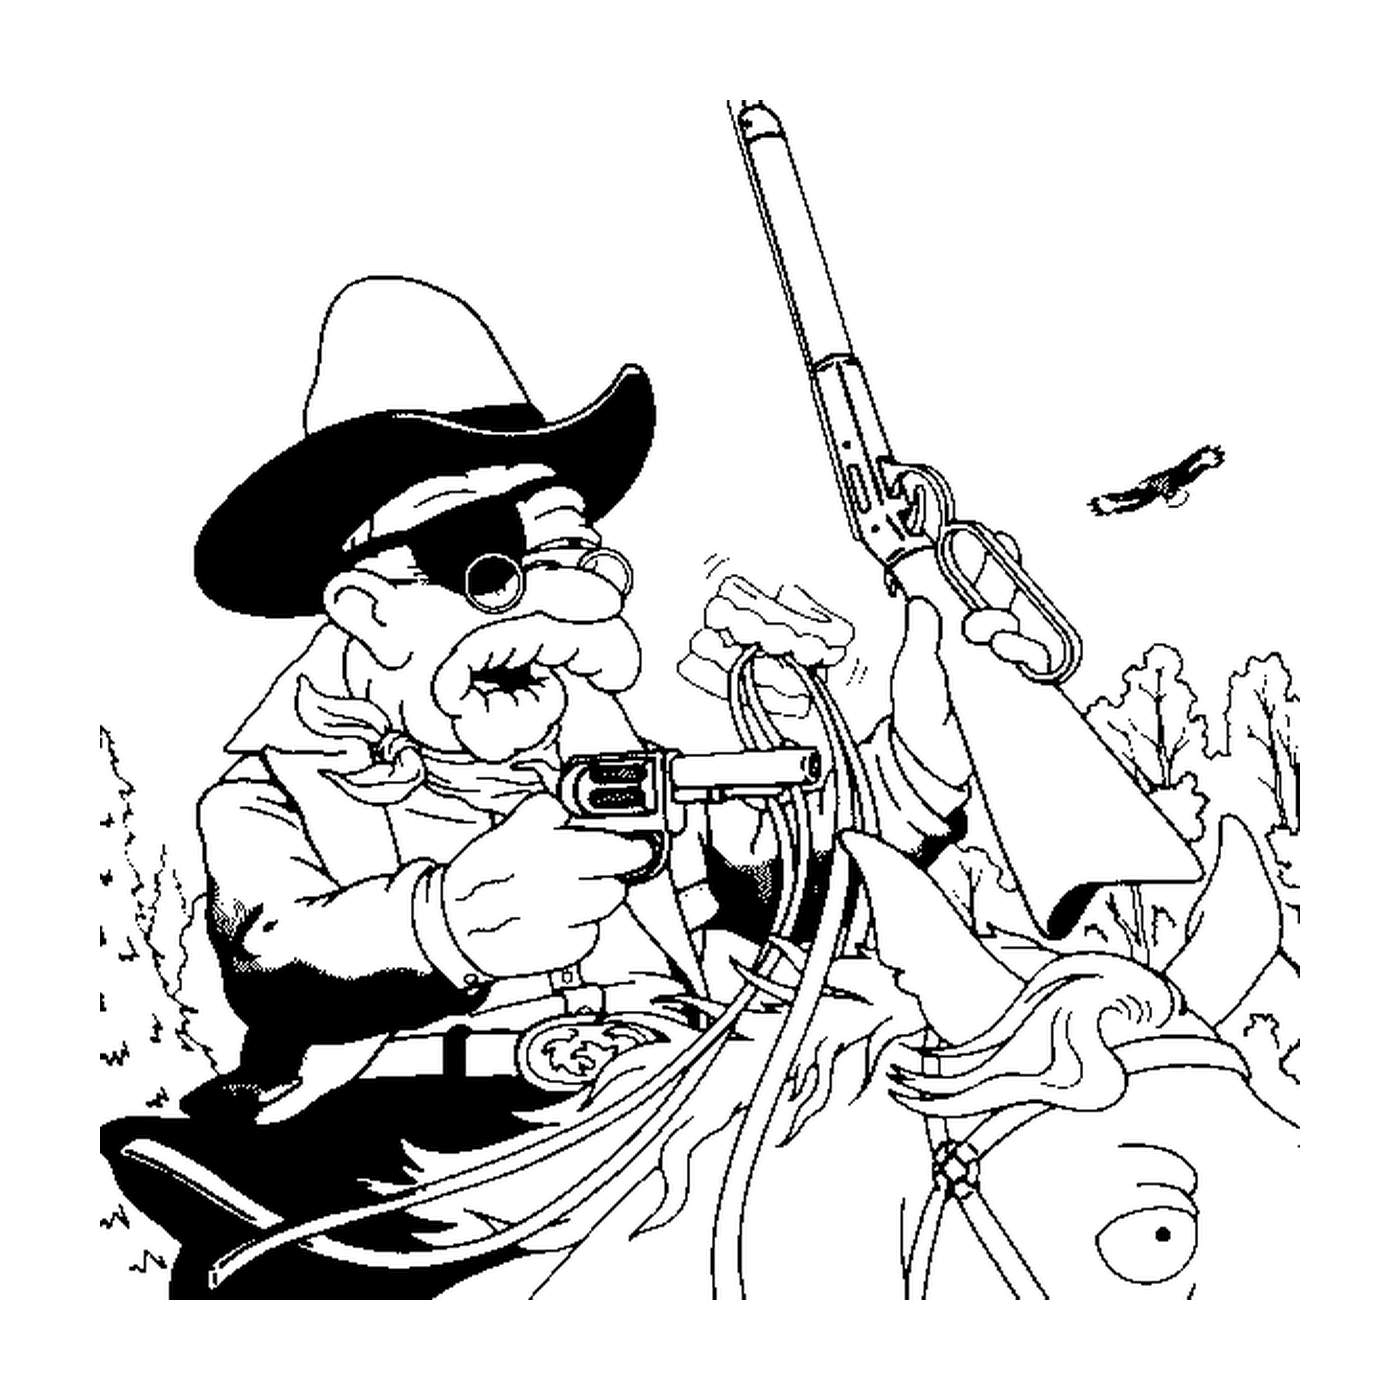  Авраам - ковбой, старик с шляпой и пистолетом 